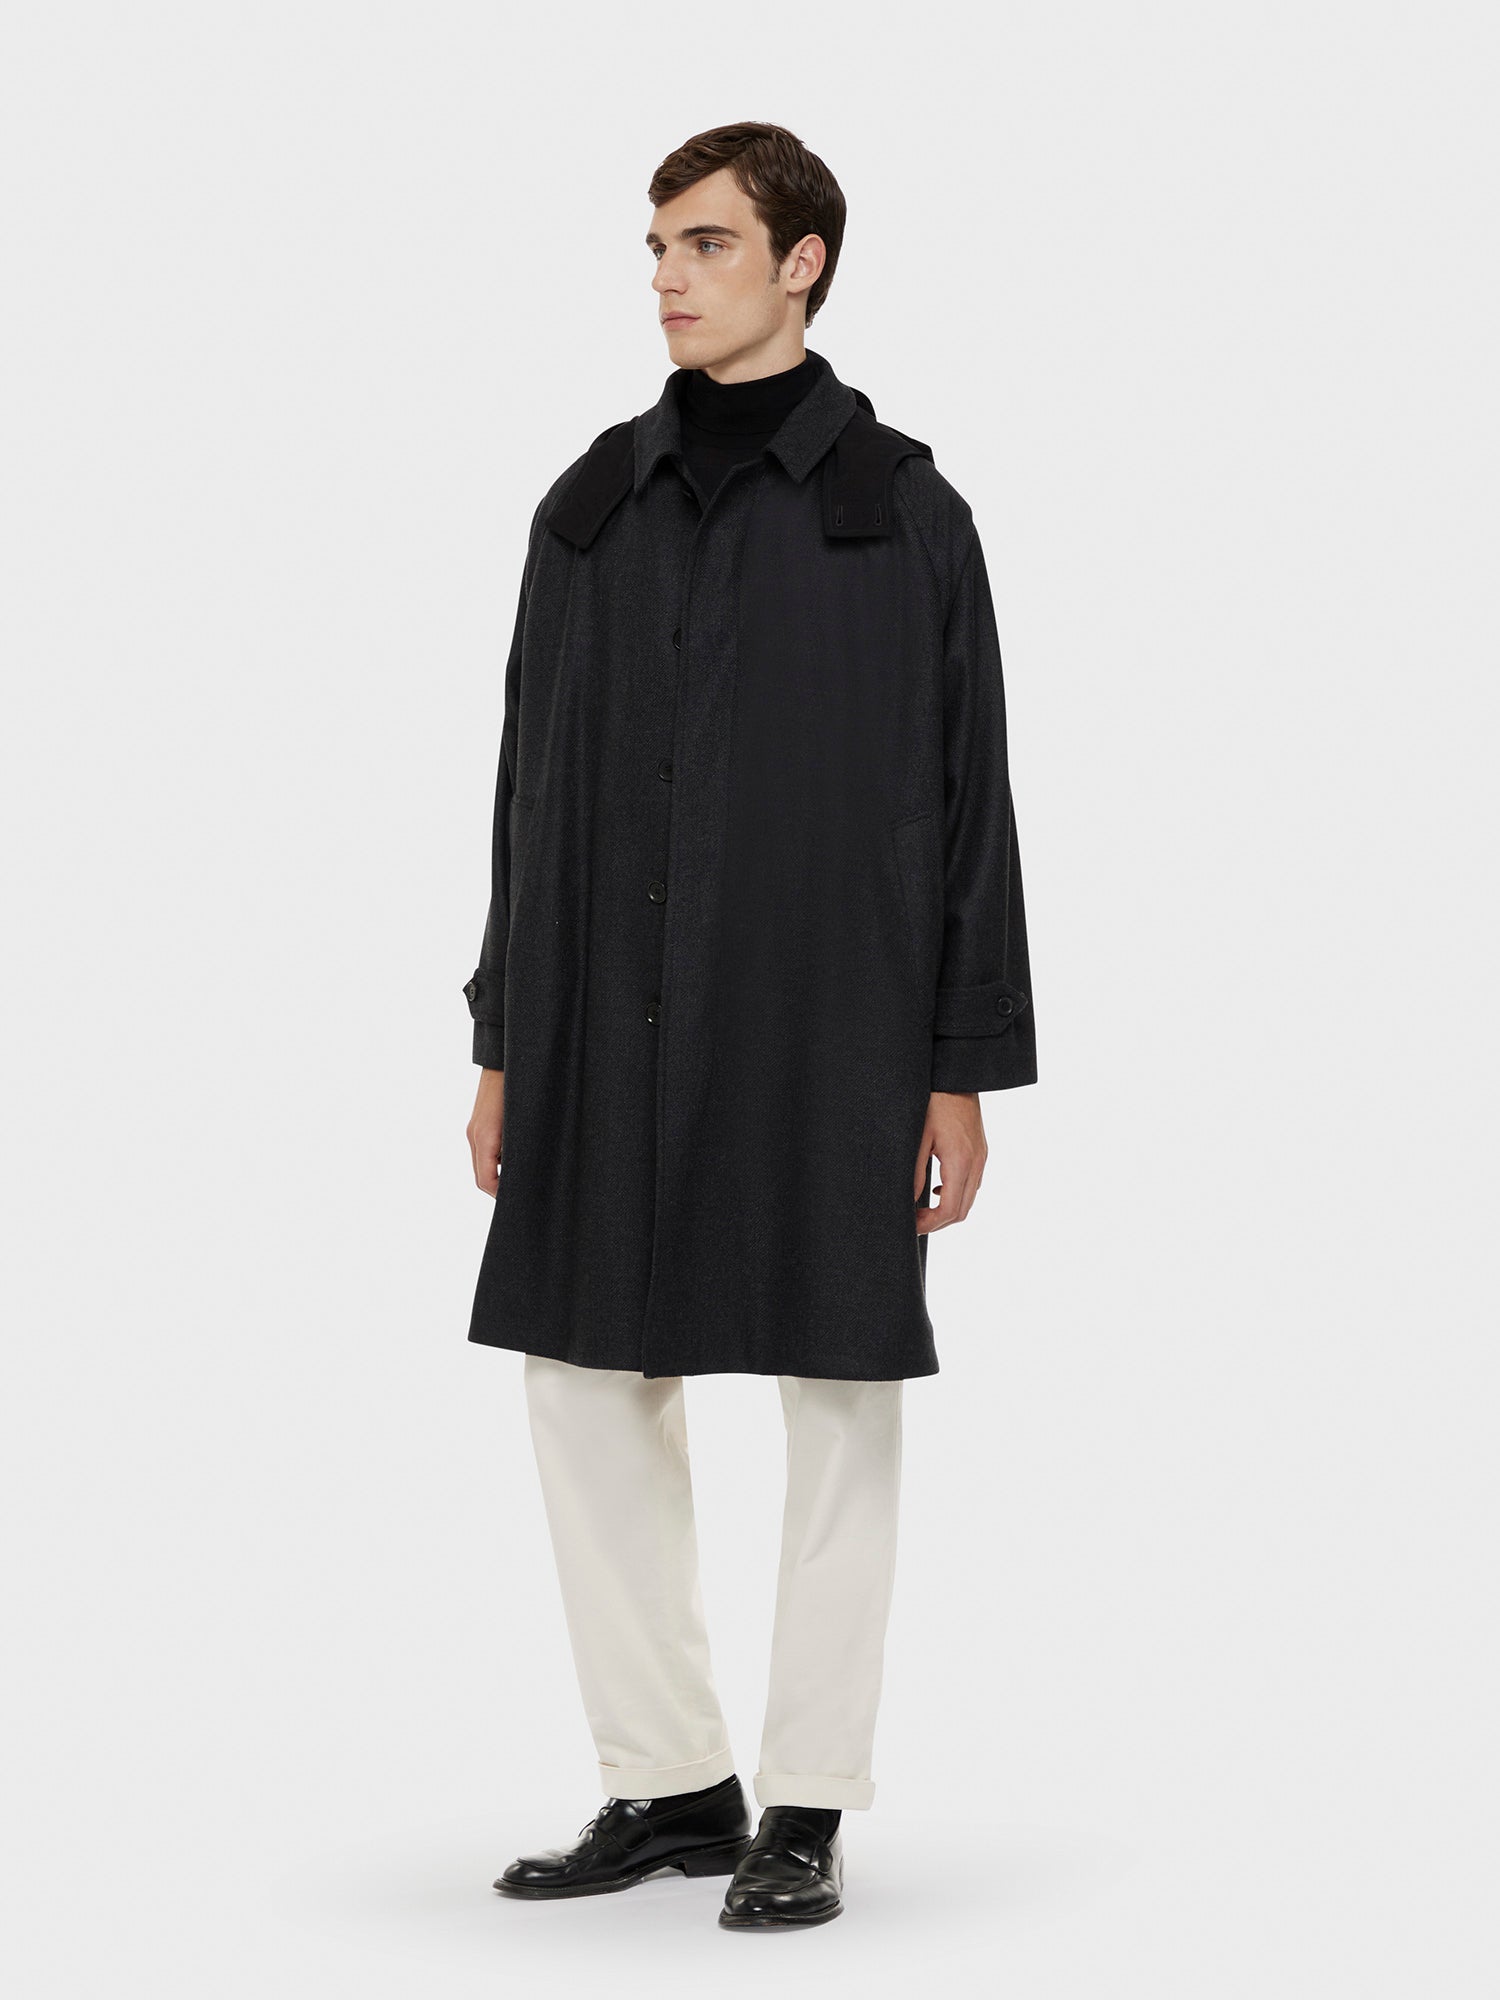 Caruso Menswear Abbigliamento Uomo Cappotto con cappuccio in lana e cashmere grigio antracite total look